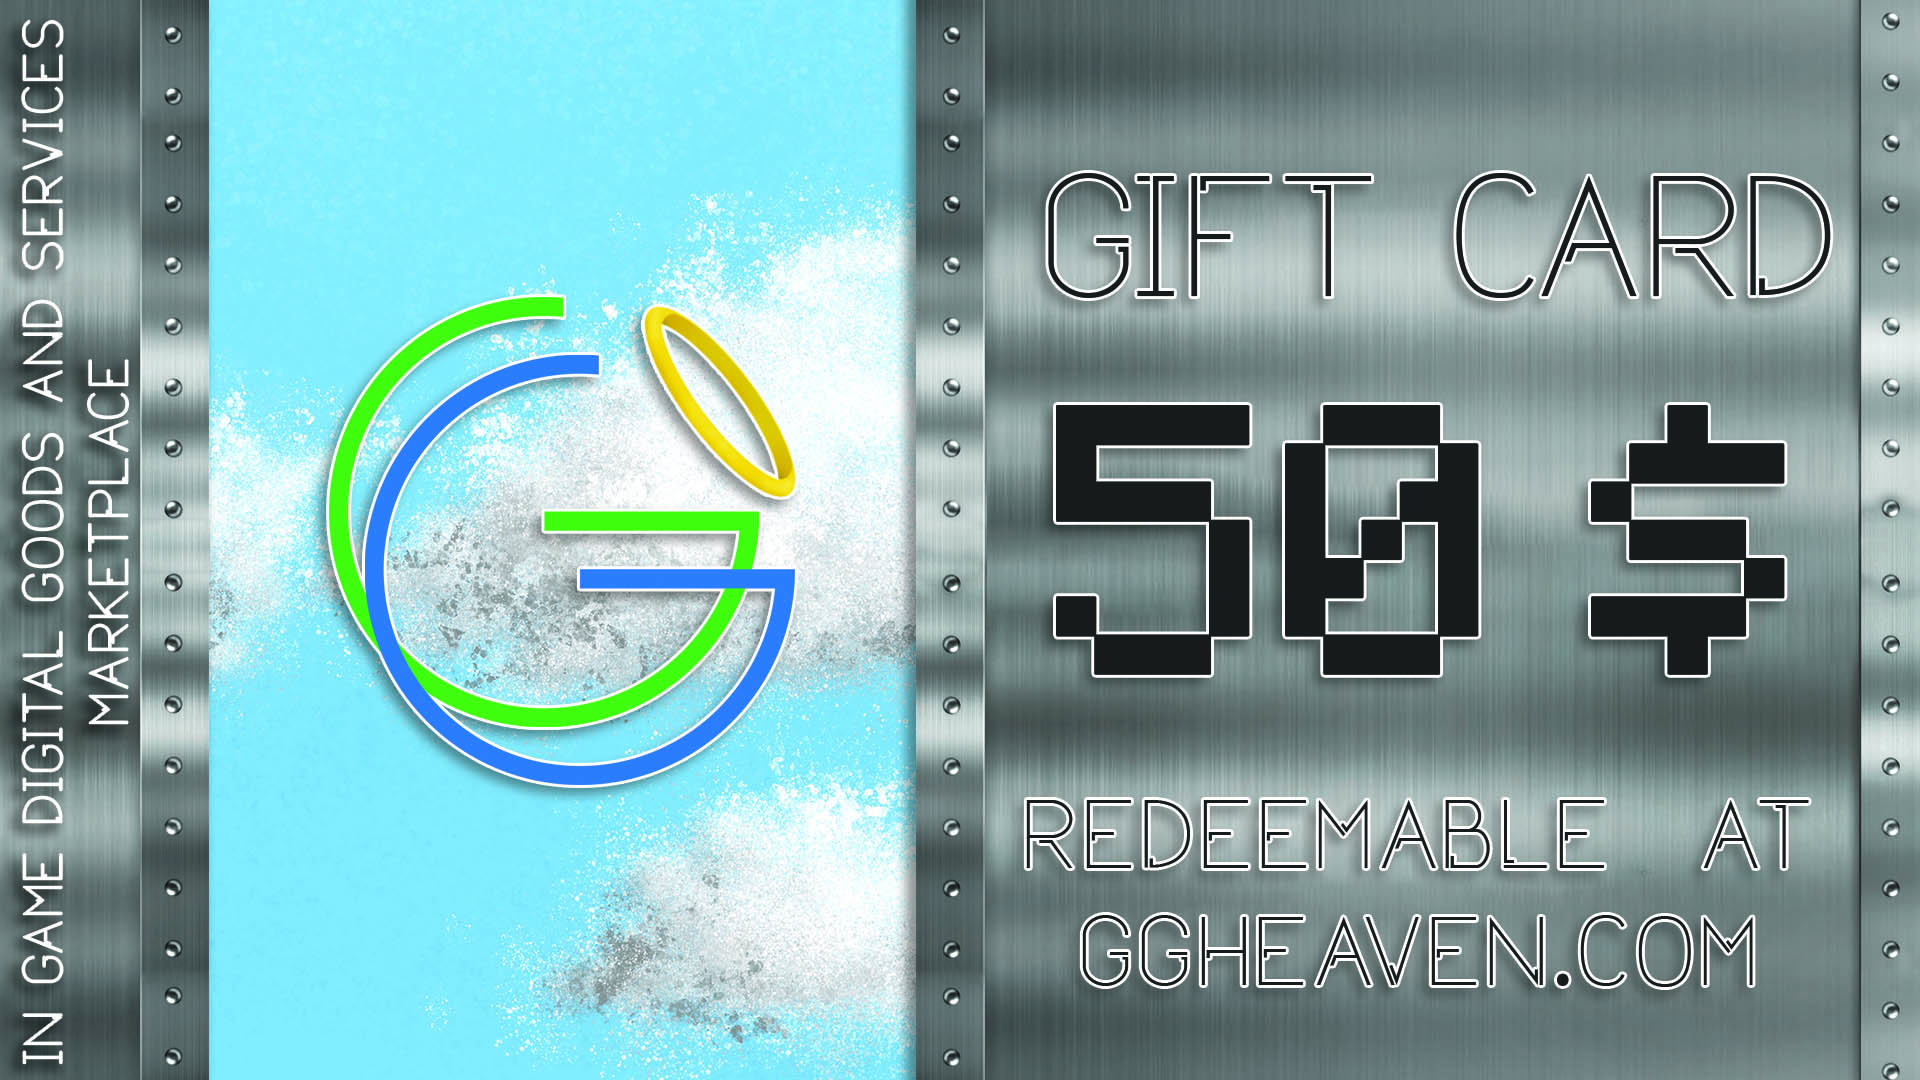 GGHeaven.com 50$ Gift Card